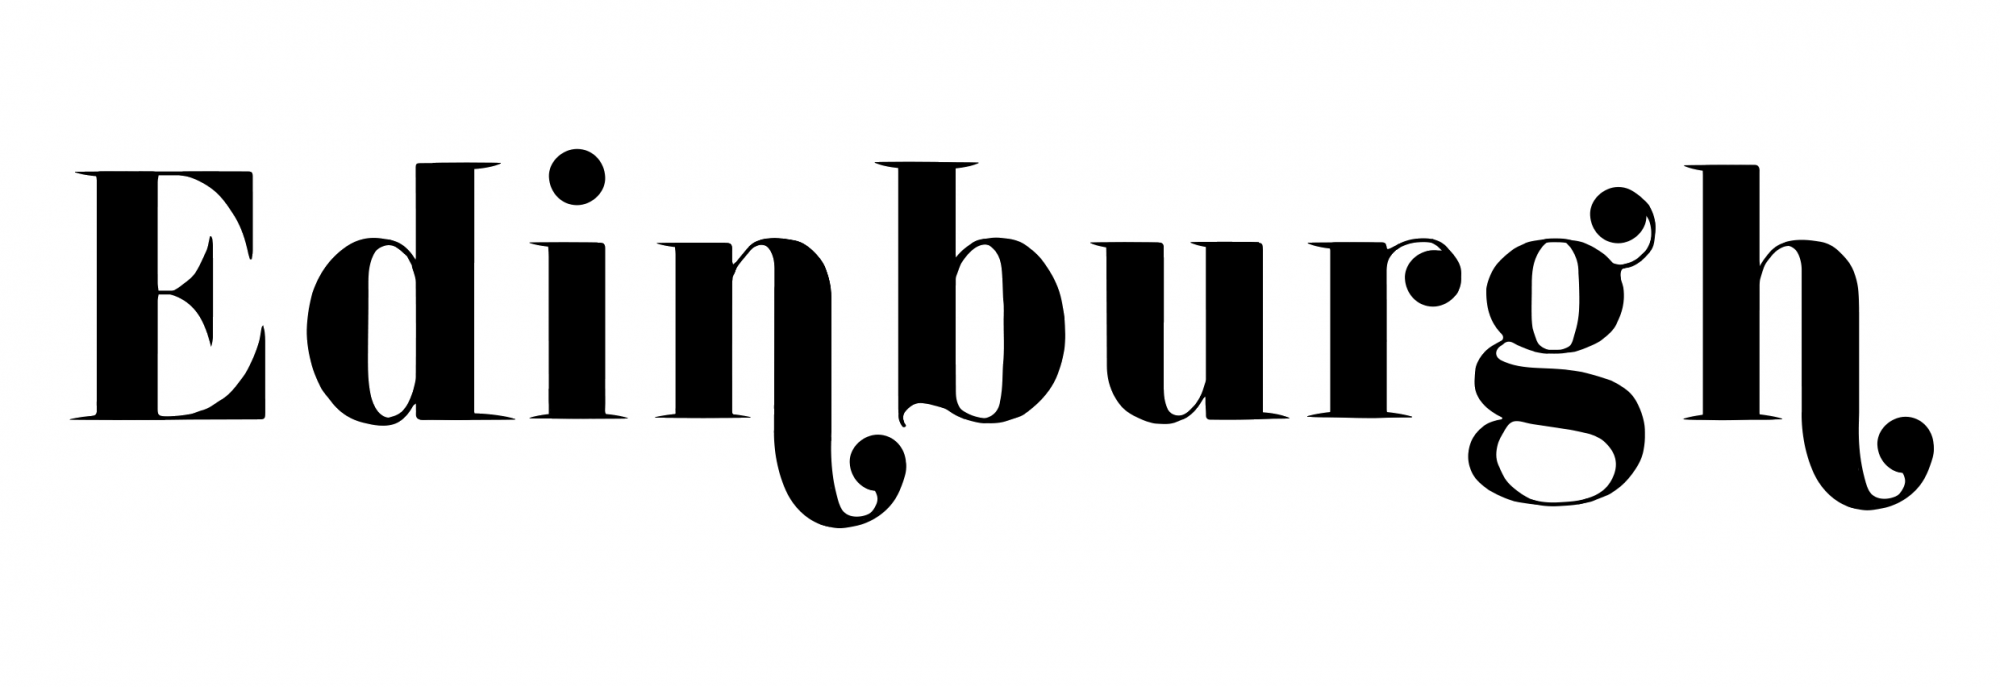 Typeface designed for Edinburgh book.